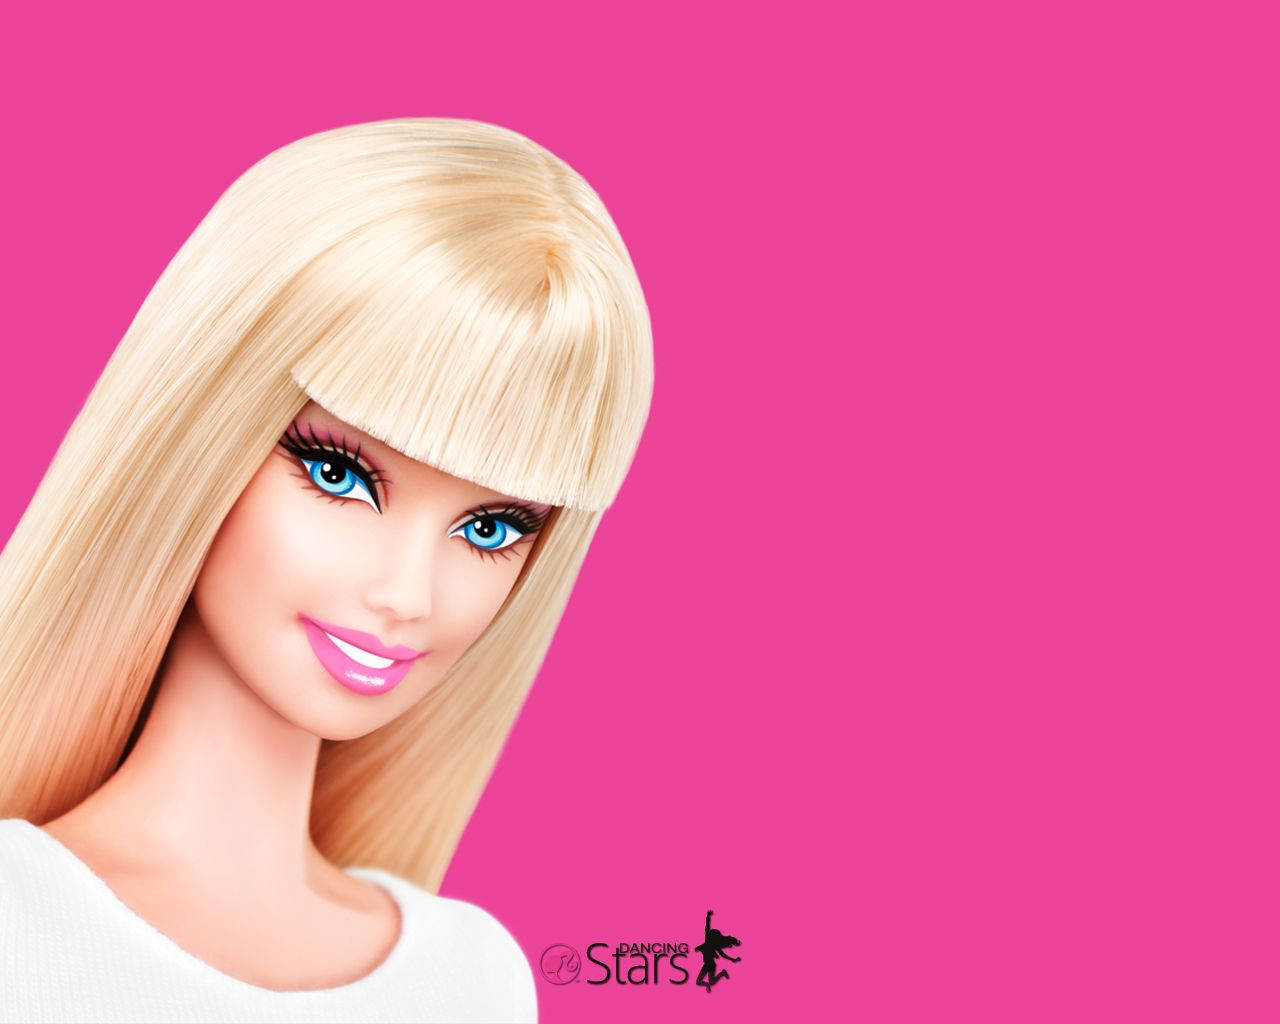 Barbie Desktop Wallpapers